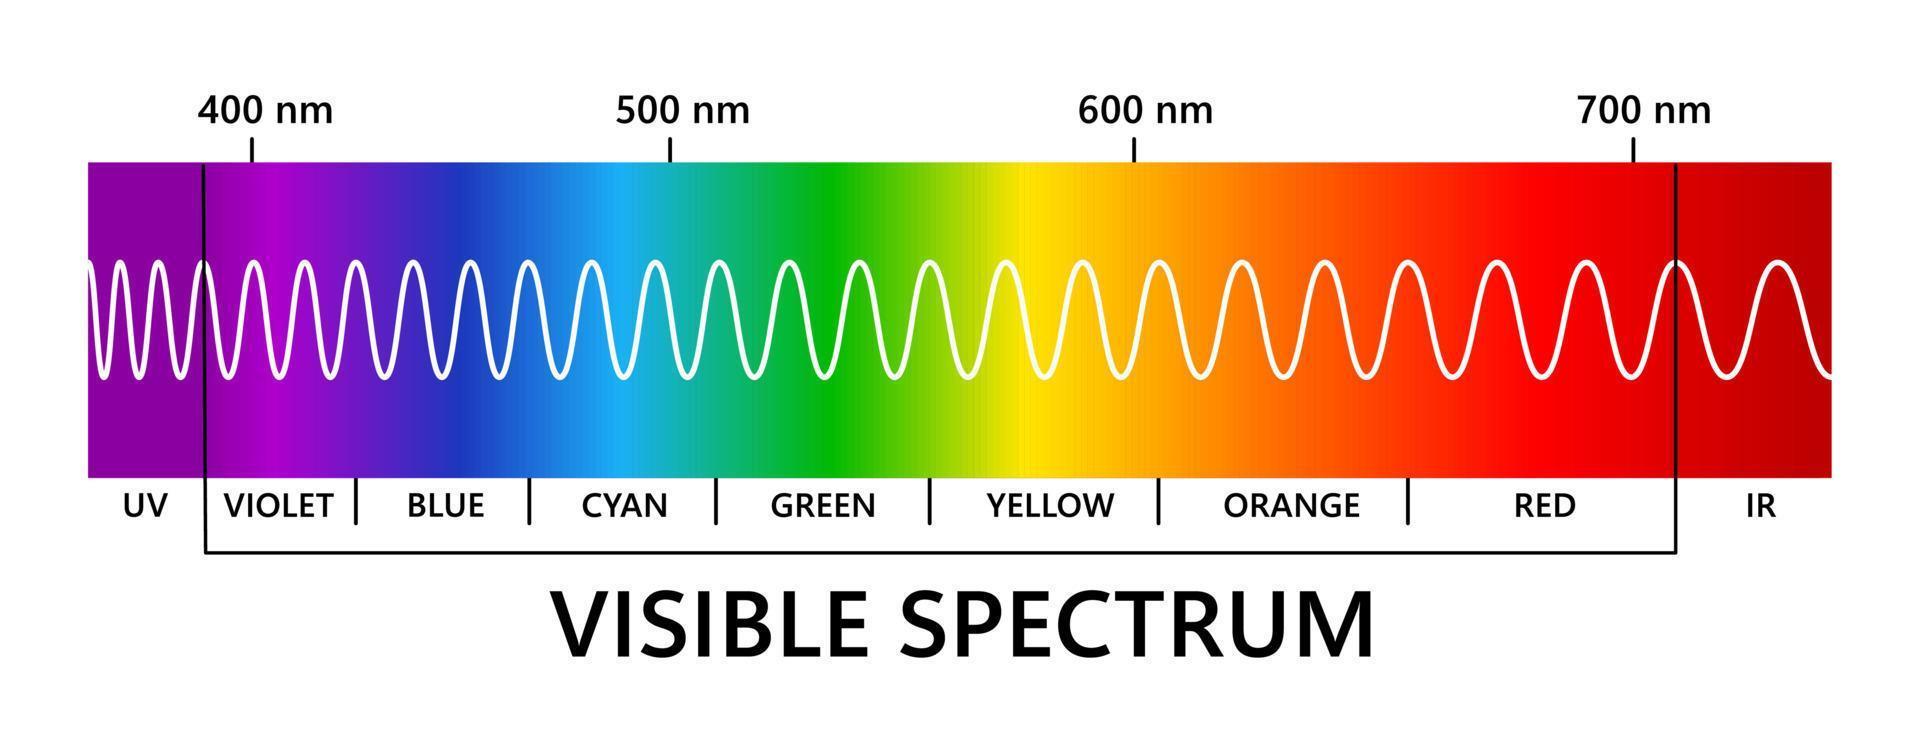 espectro de luz visible, infrarrojo y ultravioleta. longitud de onda de la luz espectro de color electromagnético visible para el ojo humano. diagrama de gradiente ilustración vectorial educativa sobre fondo blanco vector